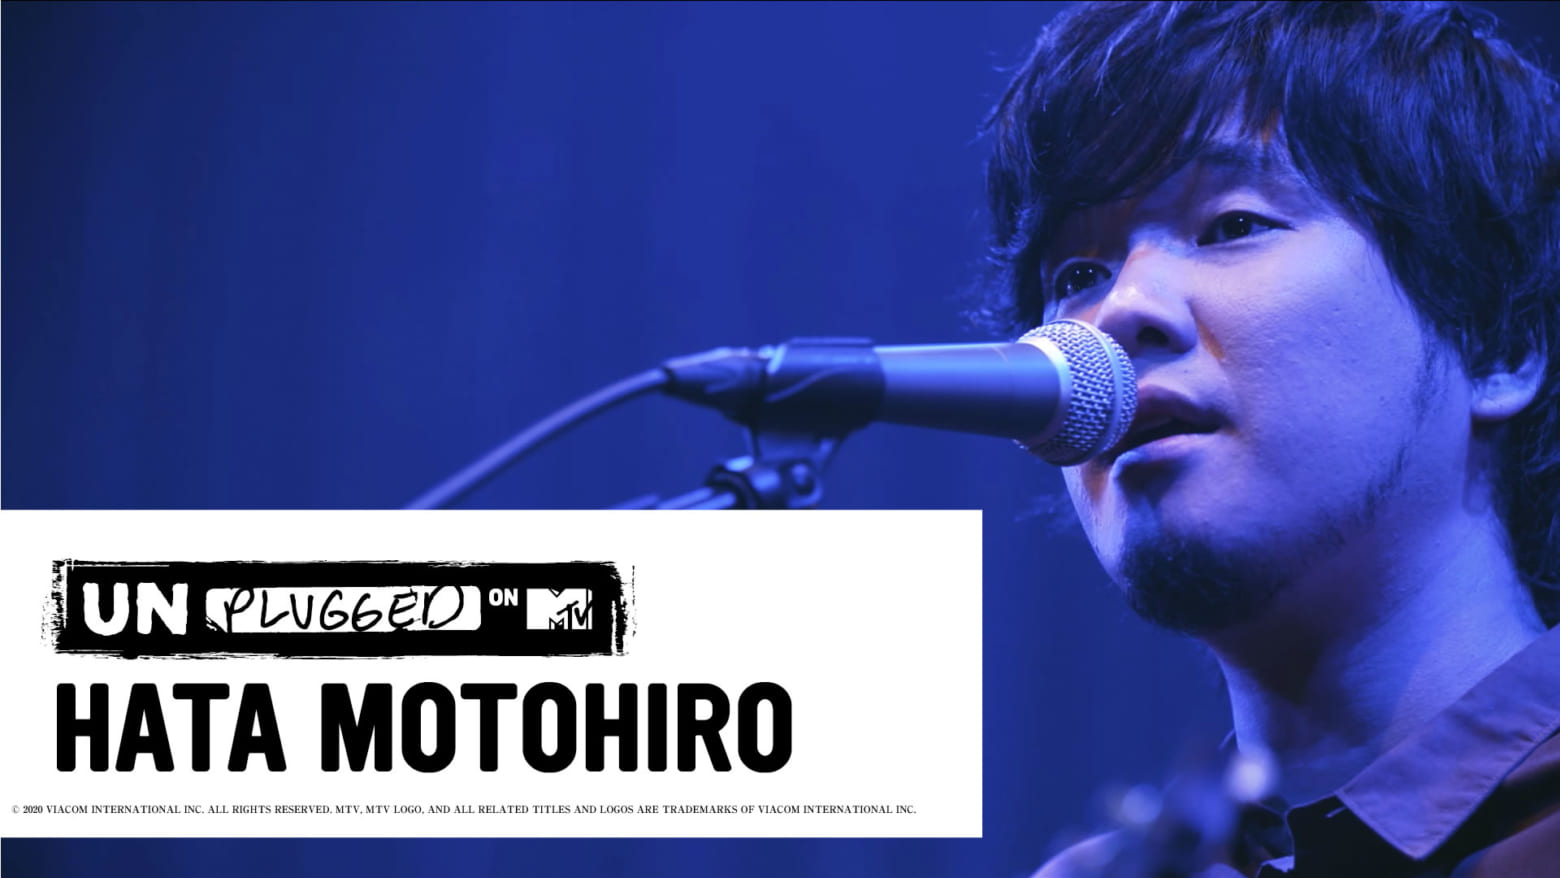 秦 基博 昨年12月開催 Mtv Unplugged より最新曲 9inch Space Ship のライブ映像公開 Musicman